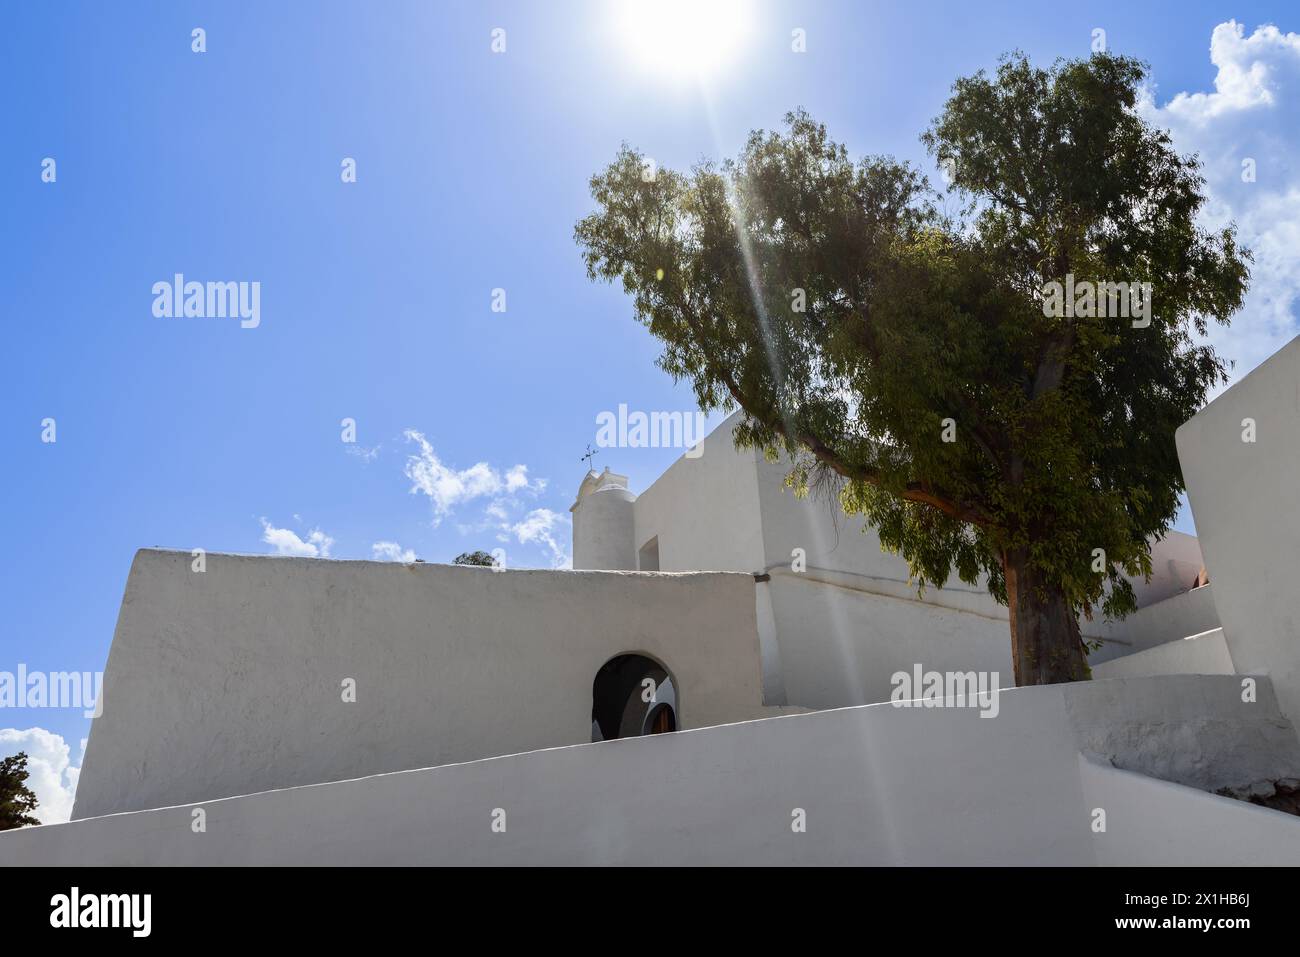 Église Puig de Missa à Santa Eulalia, Ibiza, avec des rayons du soleil perçant le feuillage d'un arbre adjacent, complétant l'architecture blanche et dure Banque D'Images